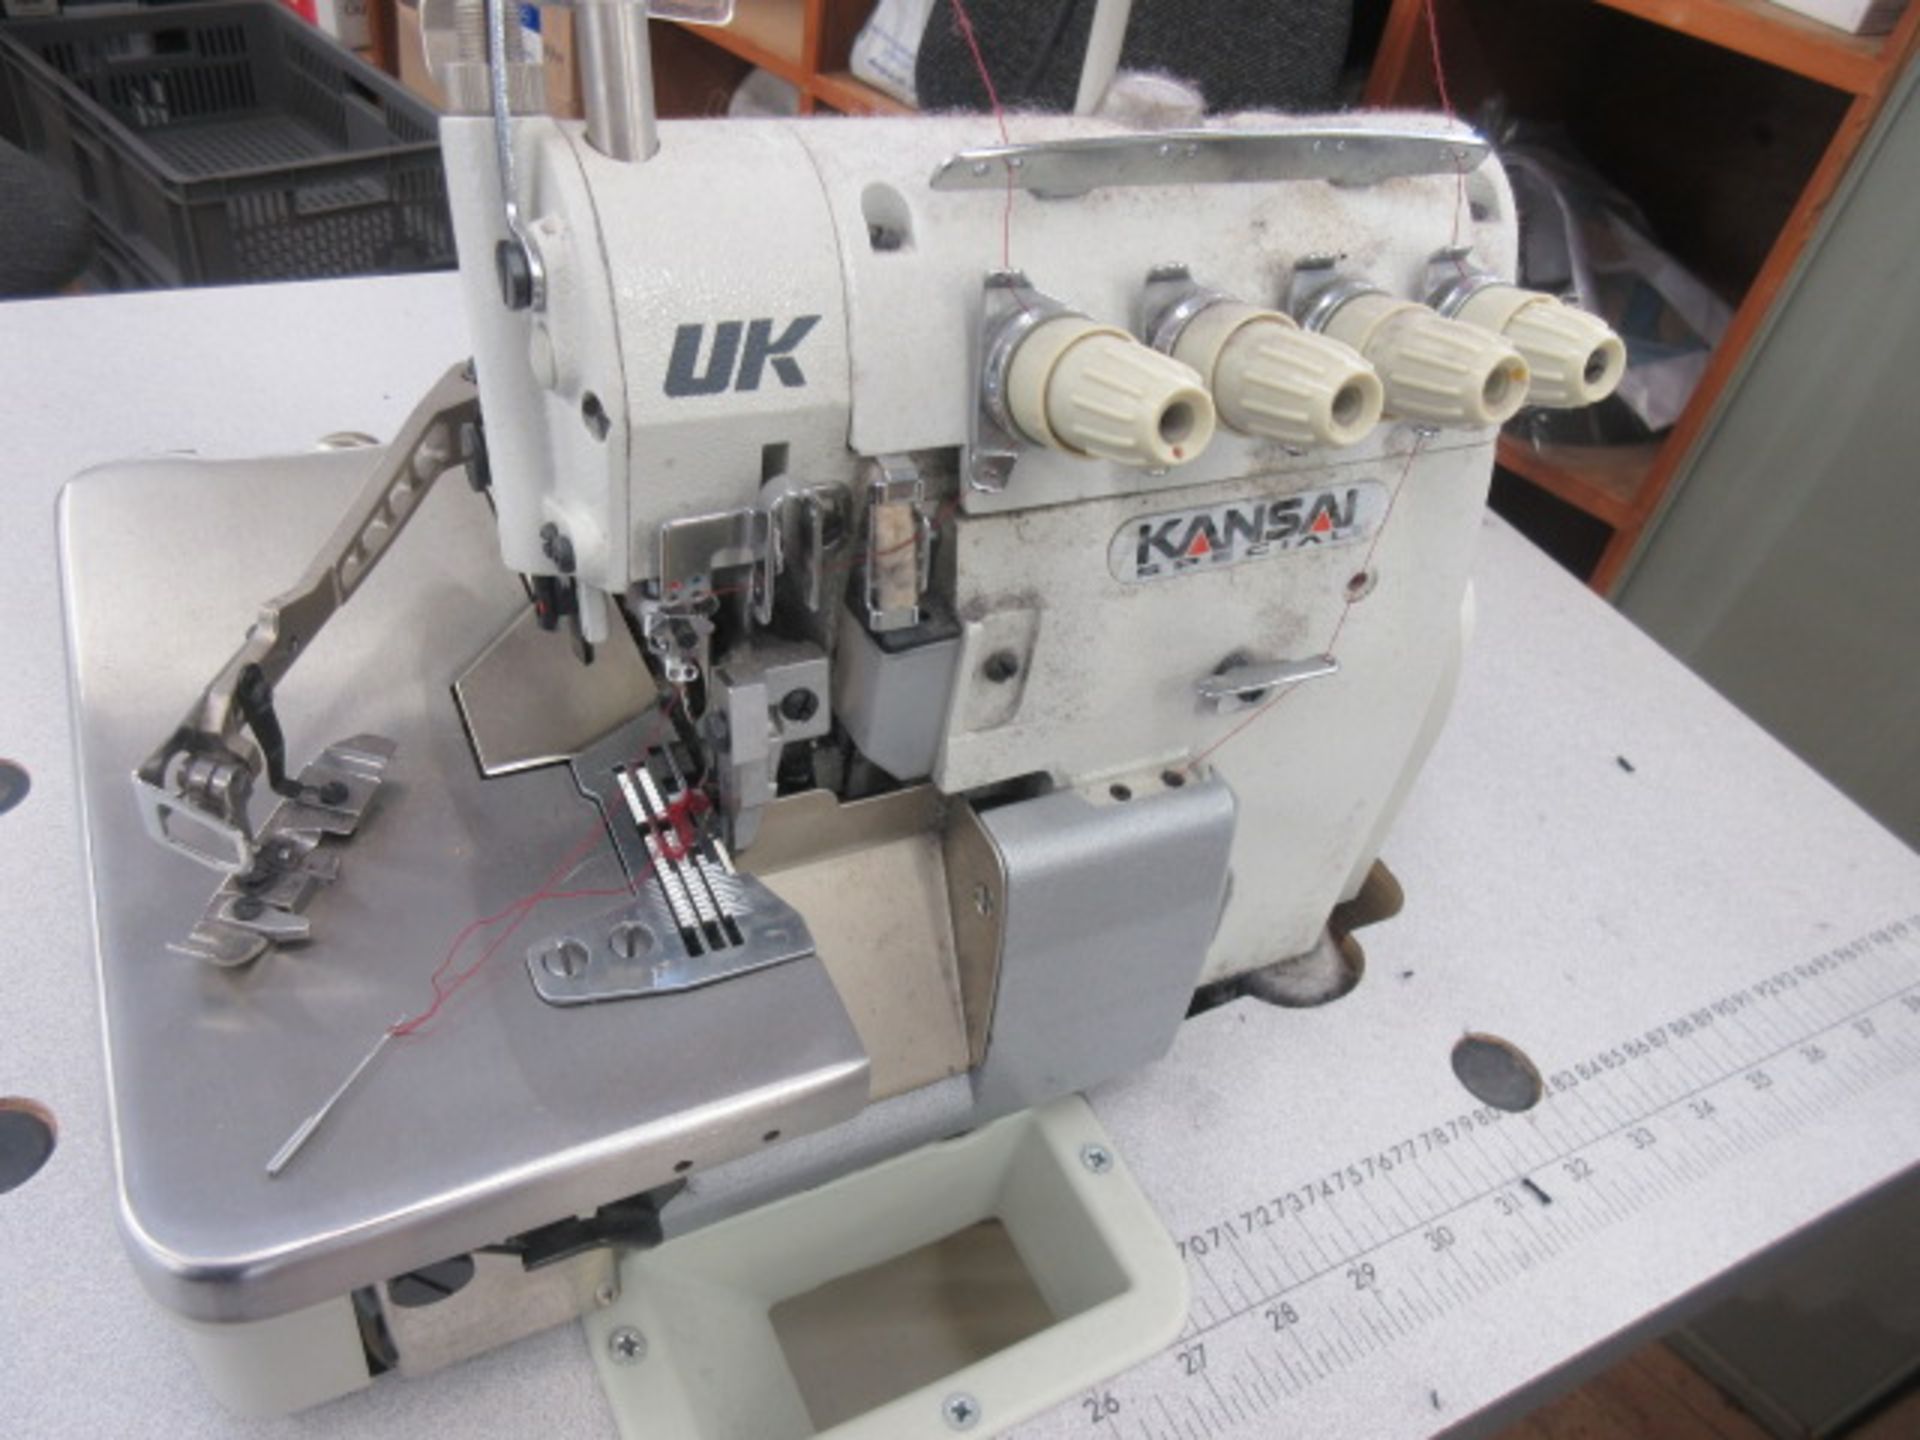 Kansai UK2014H-01-M sewing machine (2012) - Image 2 of 3